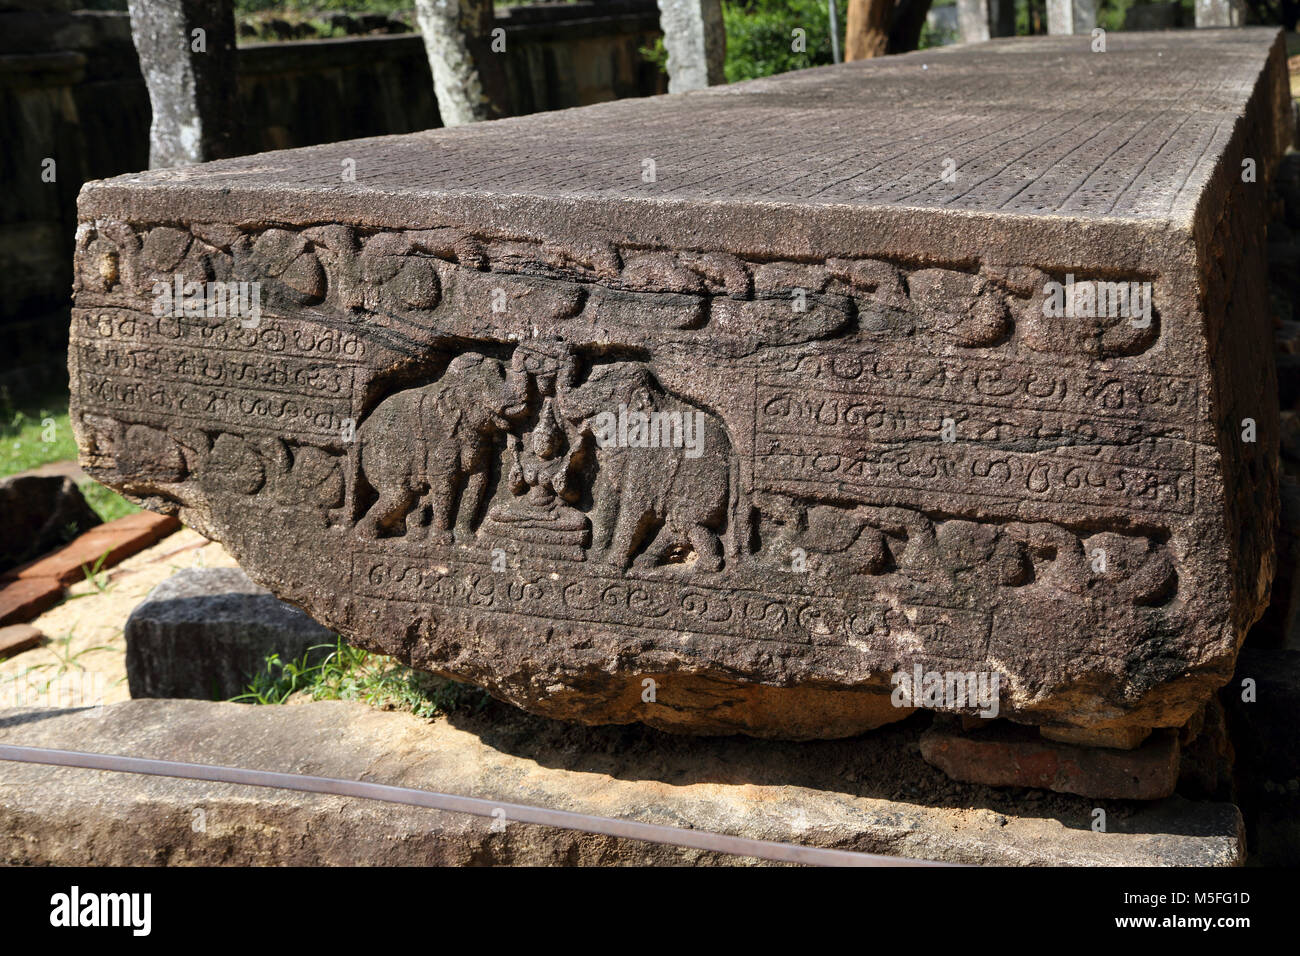 Polonnaruwa Quadrangle al norte y centro de la Provincia de Sri Lanka El Gal Pota (Libro de piedra) inscrito losa de granito alabando las obras de Nissankamalla Foto de stock